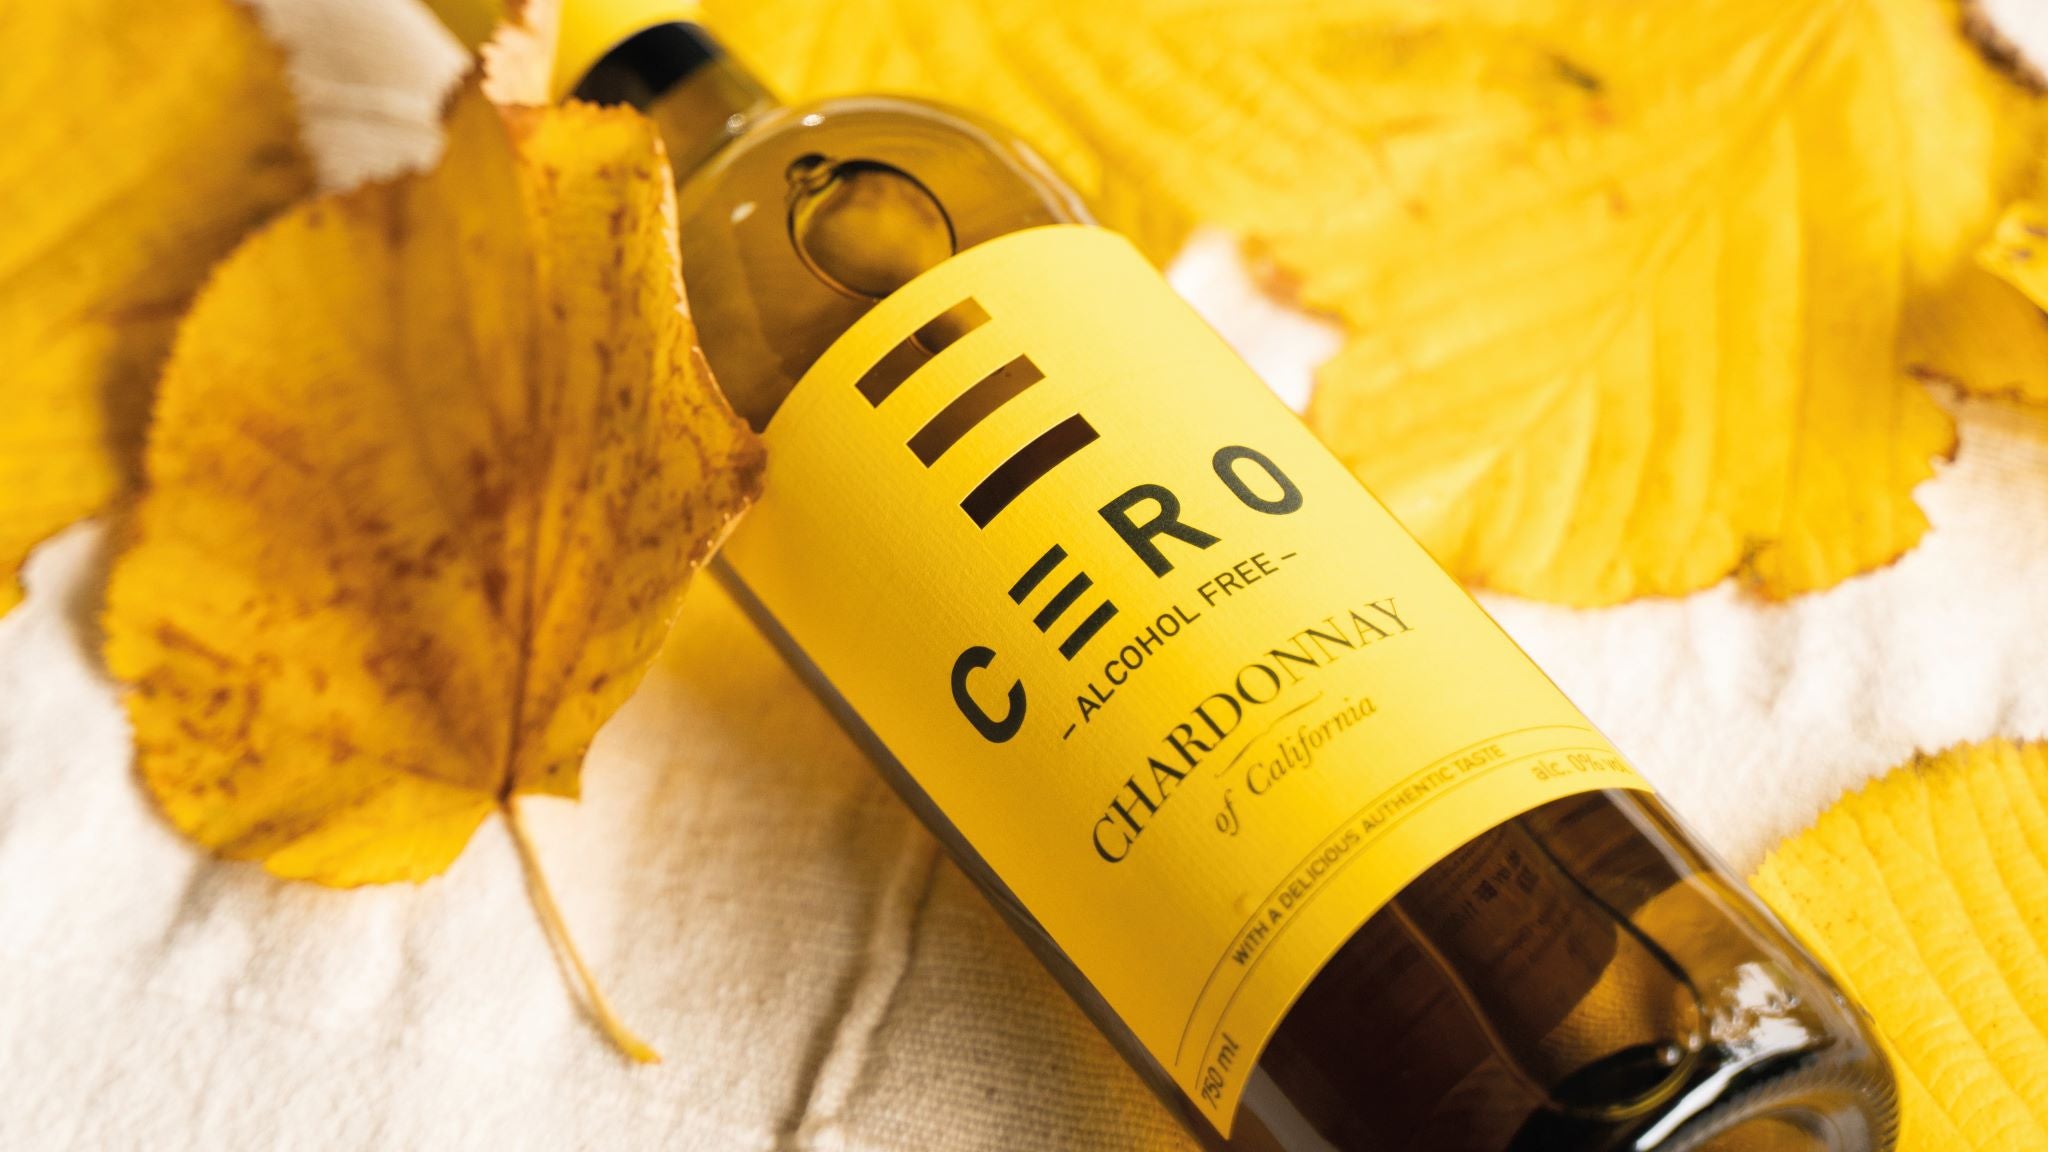 De fles alcoholvrije Chardonnay van Cero met bijpassende kleuren blaadjes bedekt.